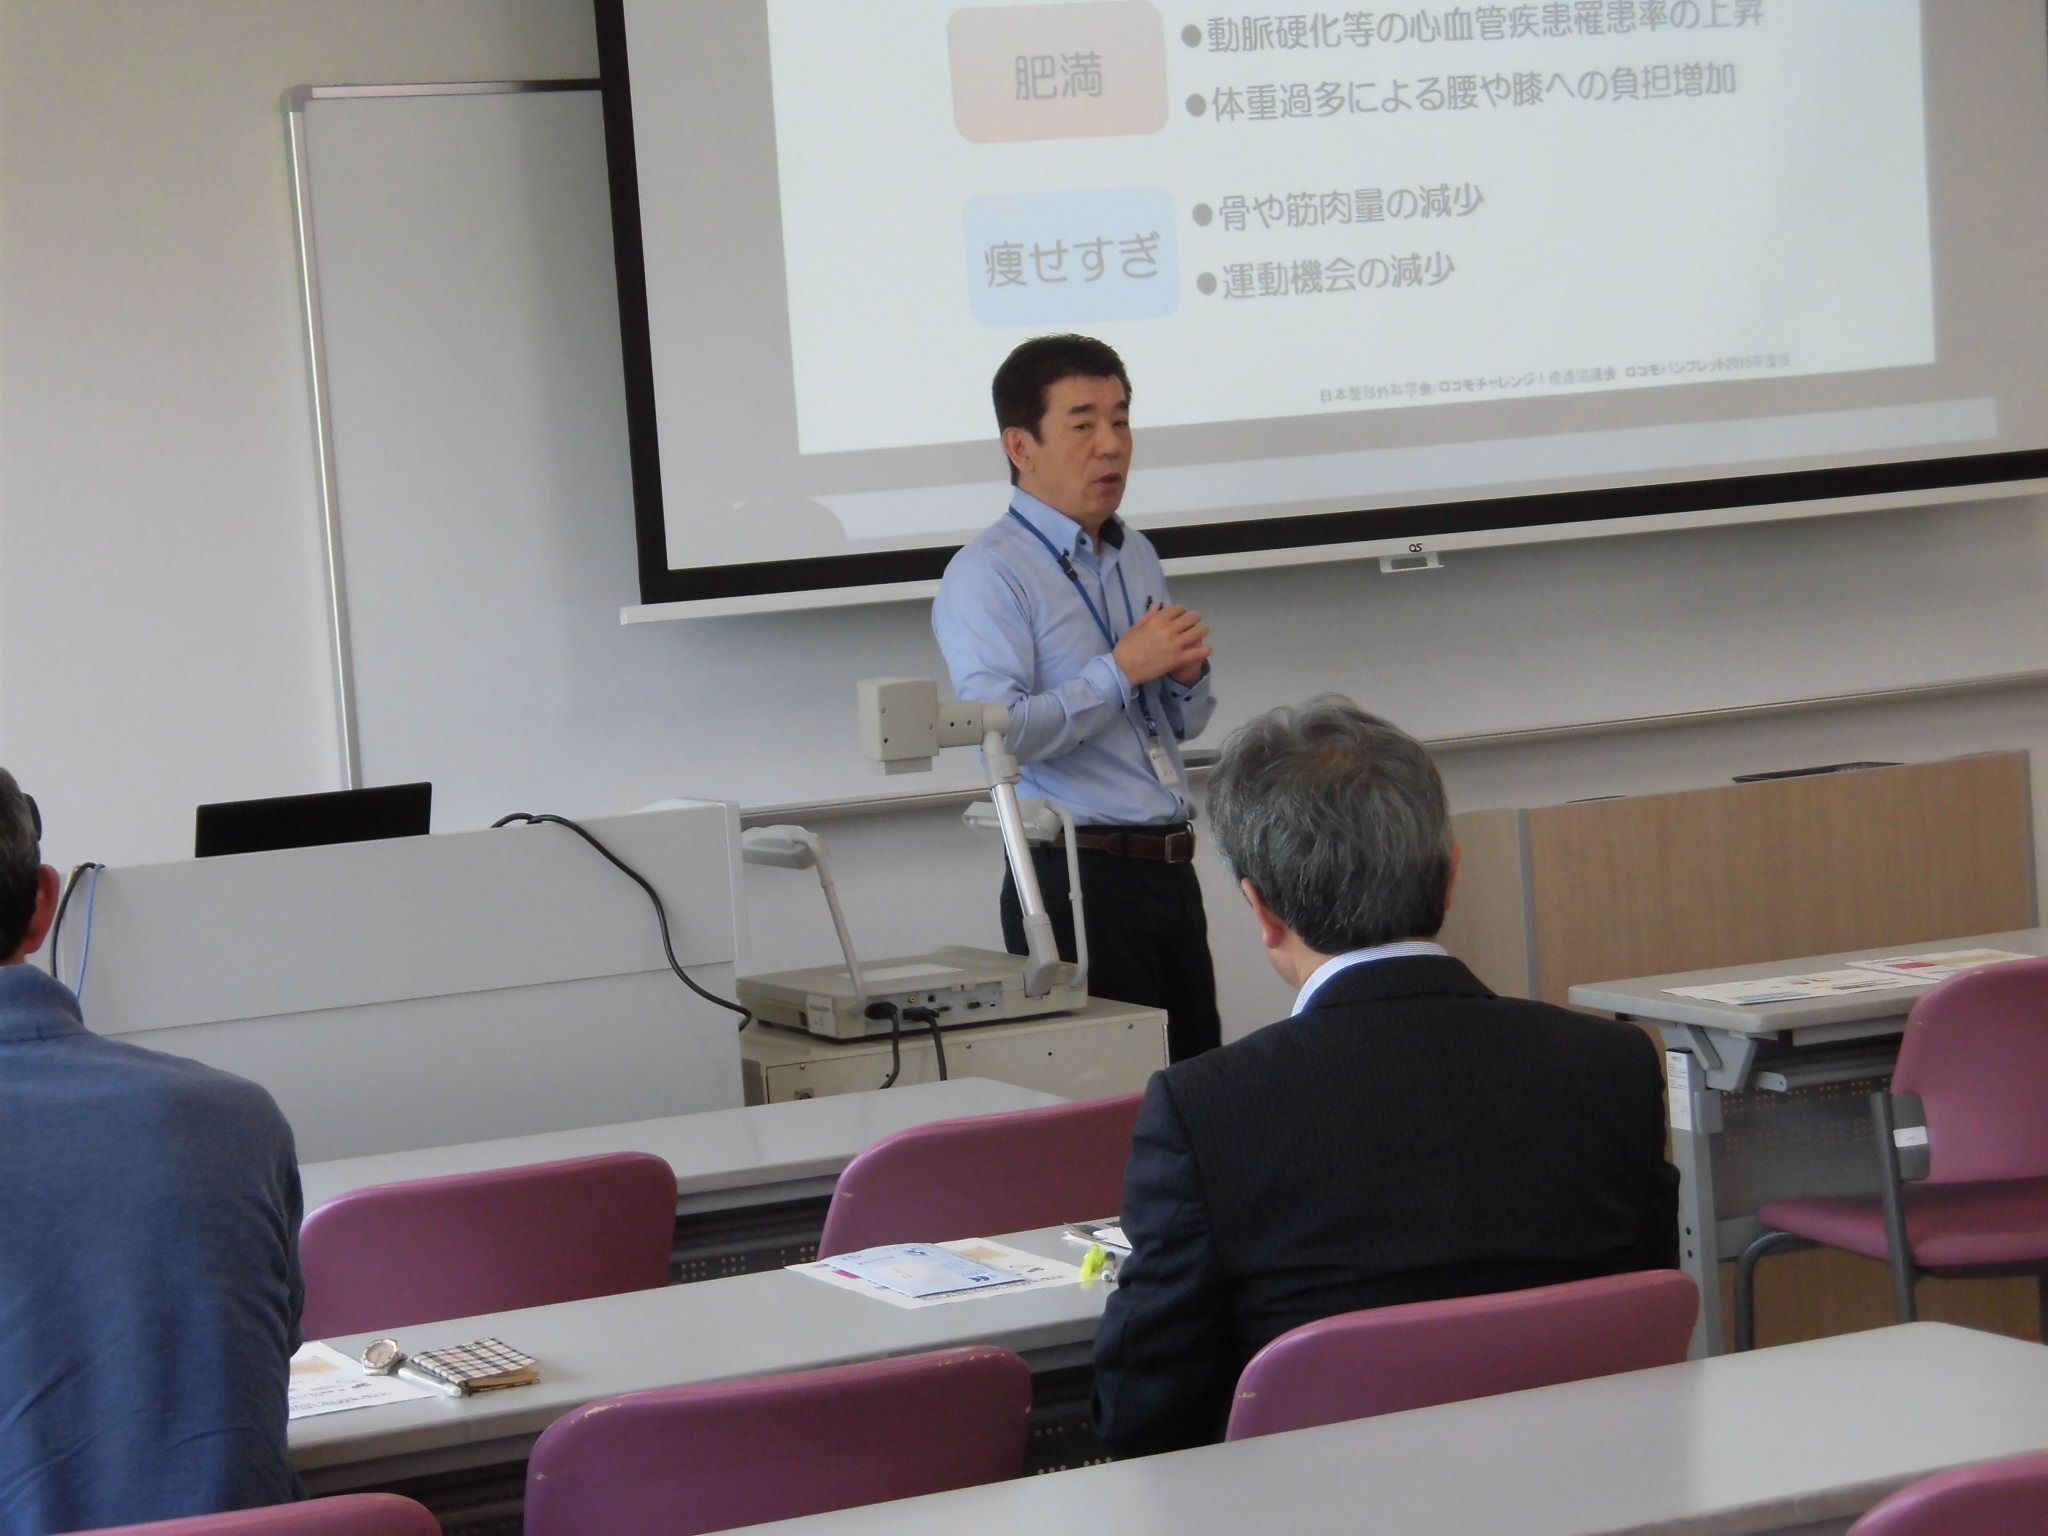 いきいき健康講座第1回目の講師細川先生の写真